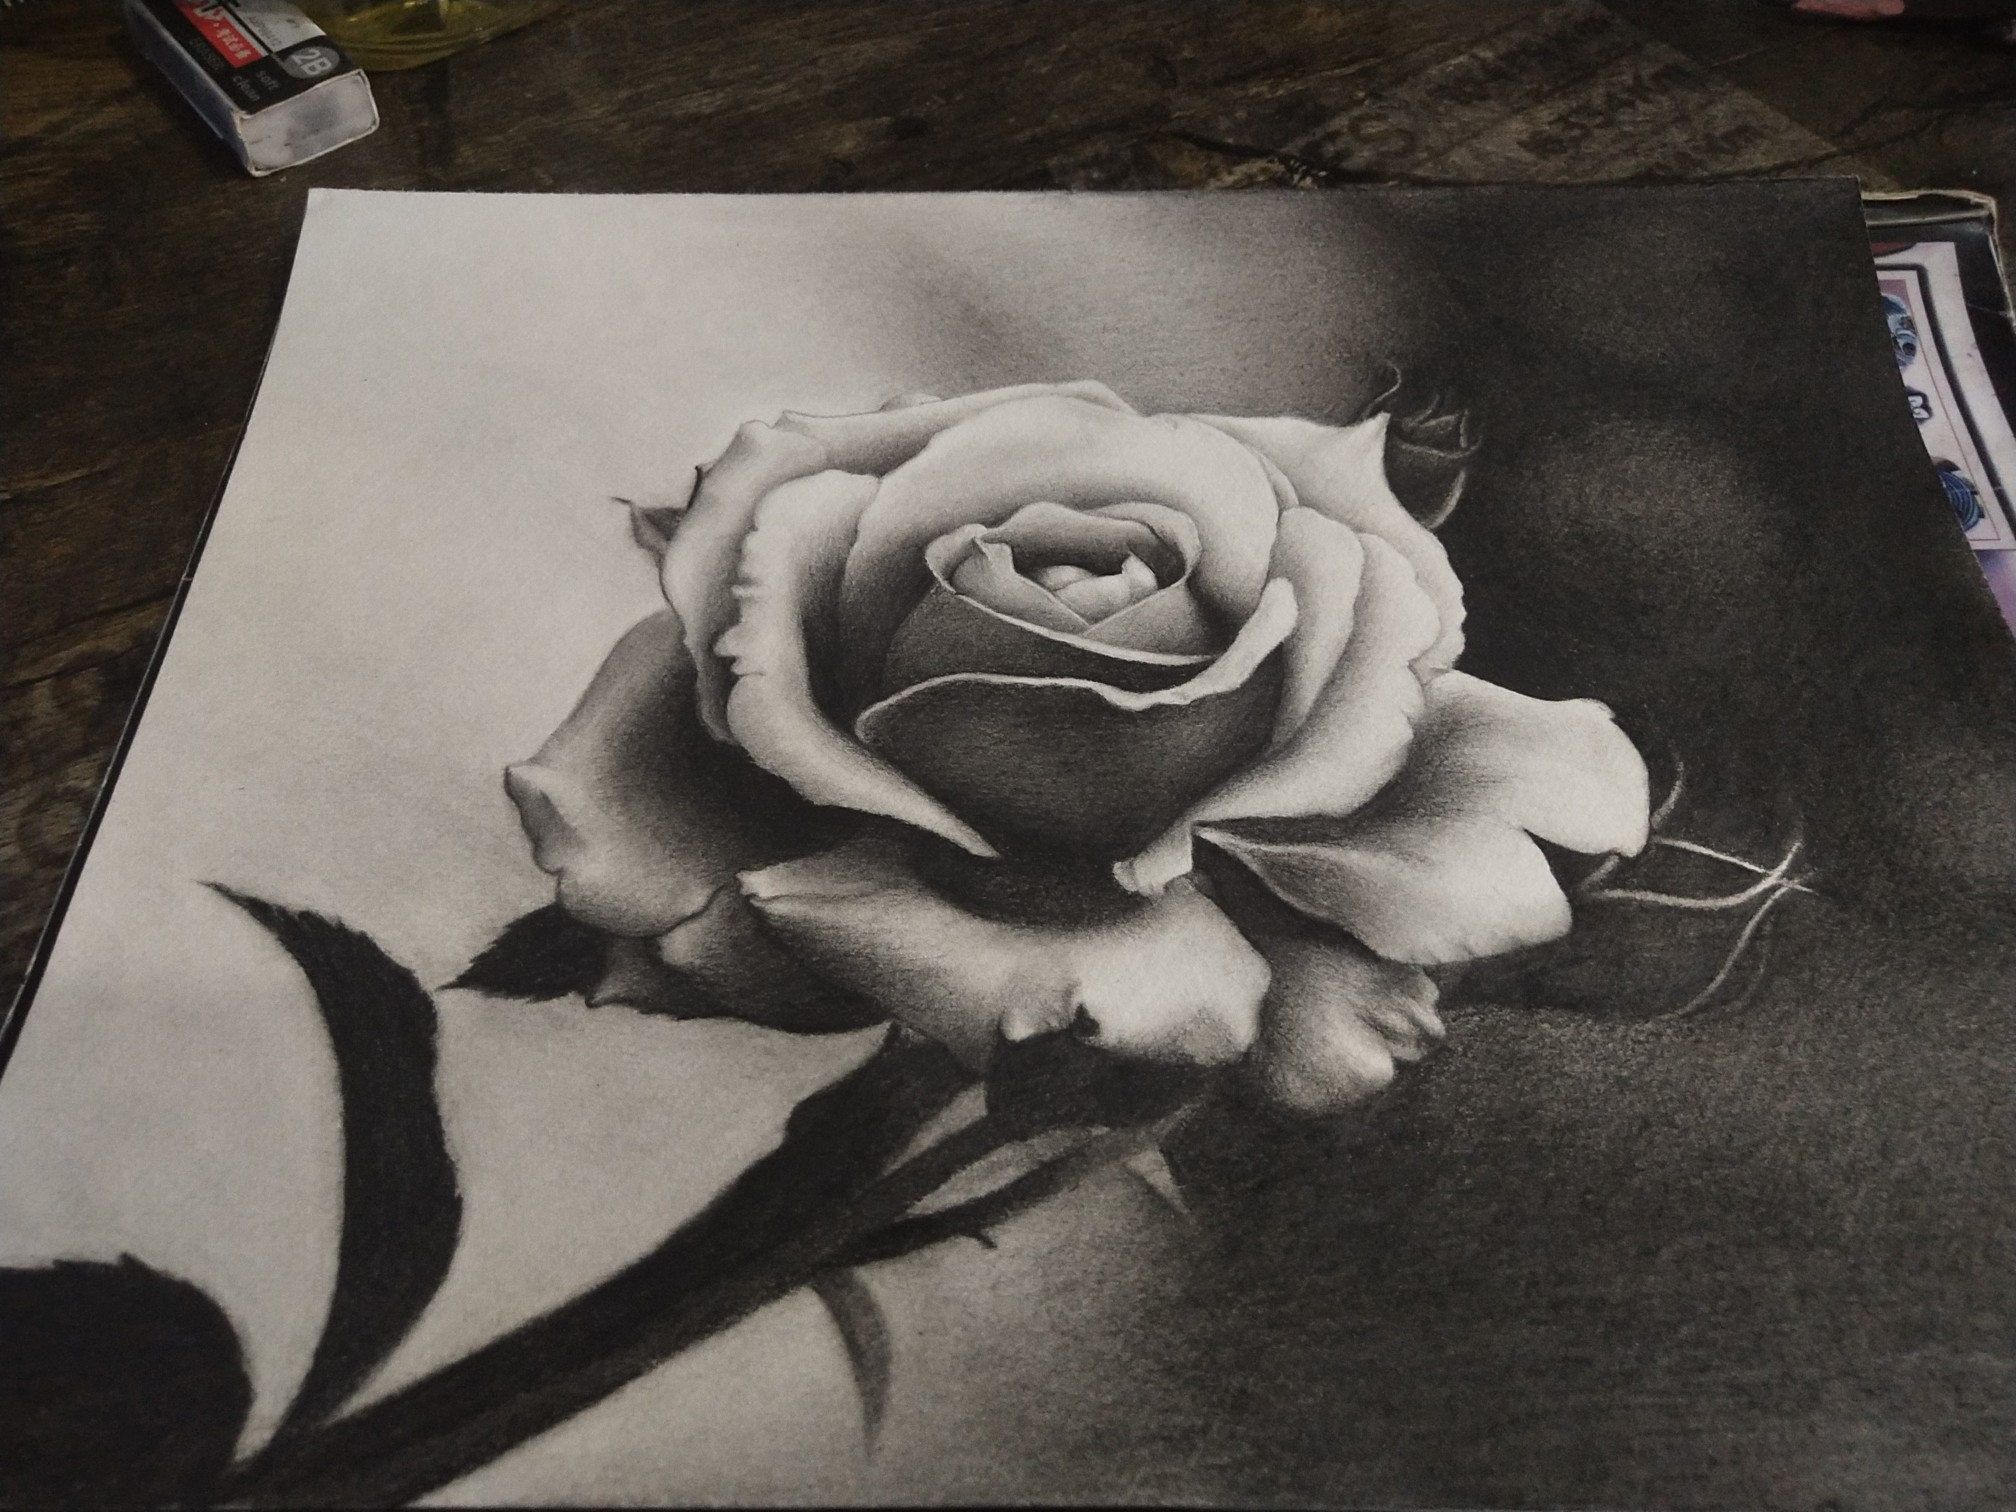 玫瑰花束素描图片